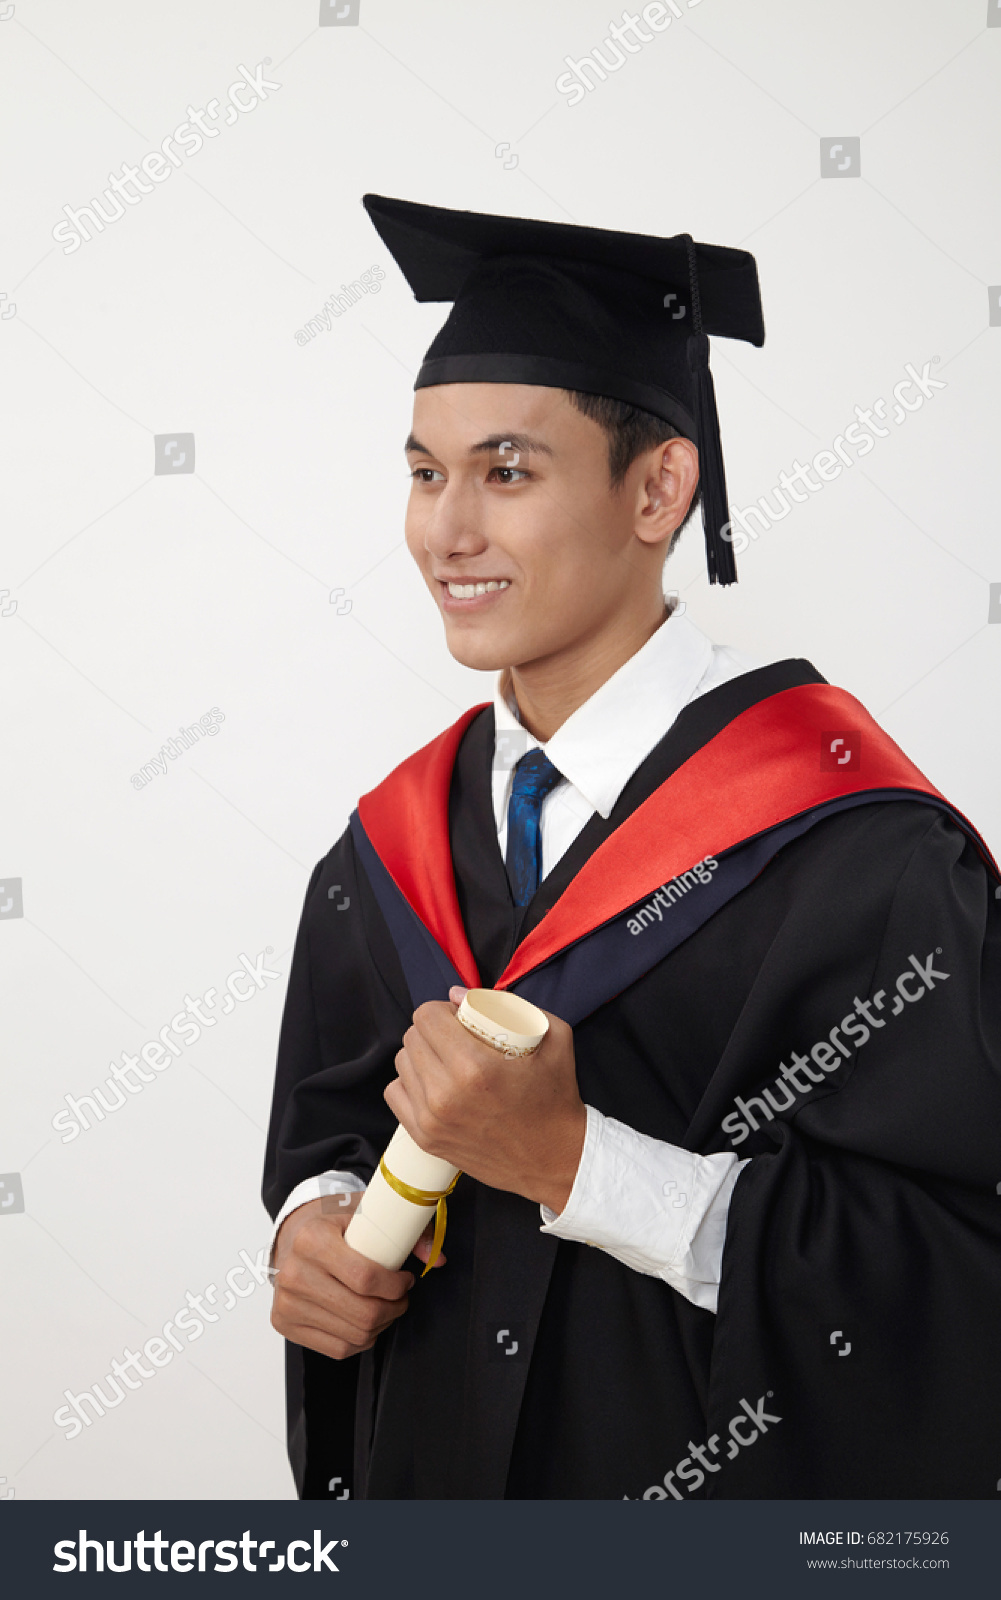 Diploma in malay